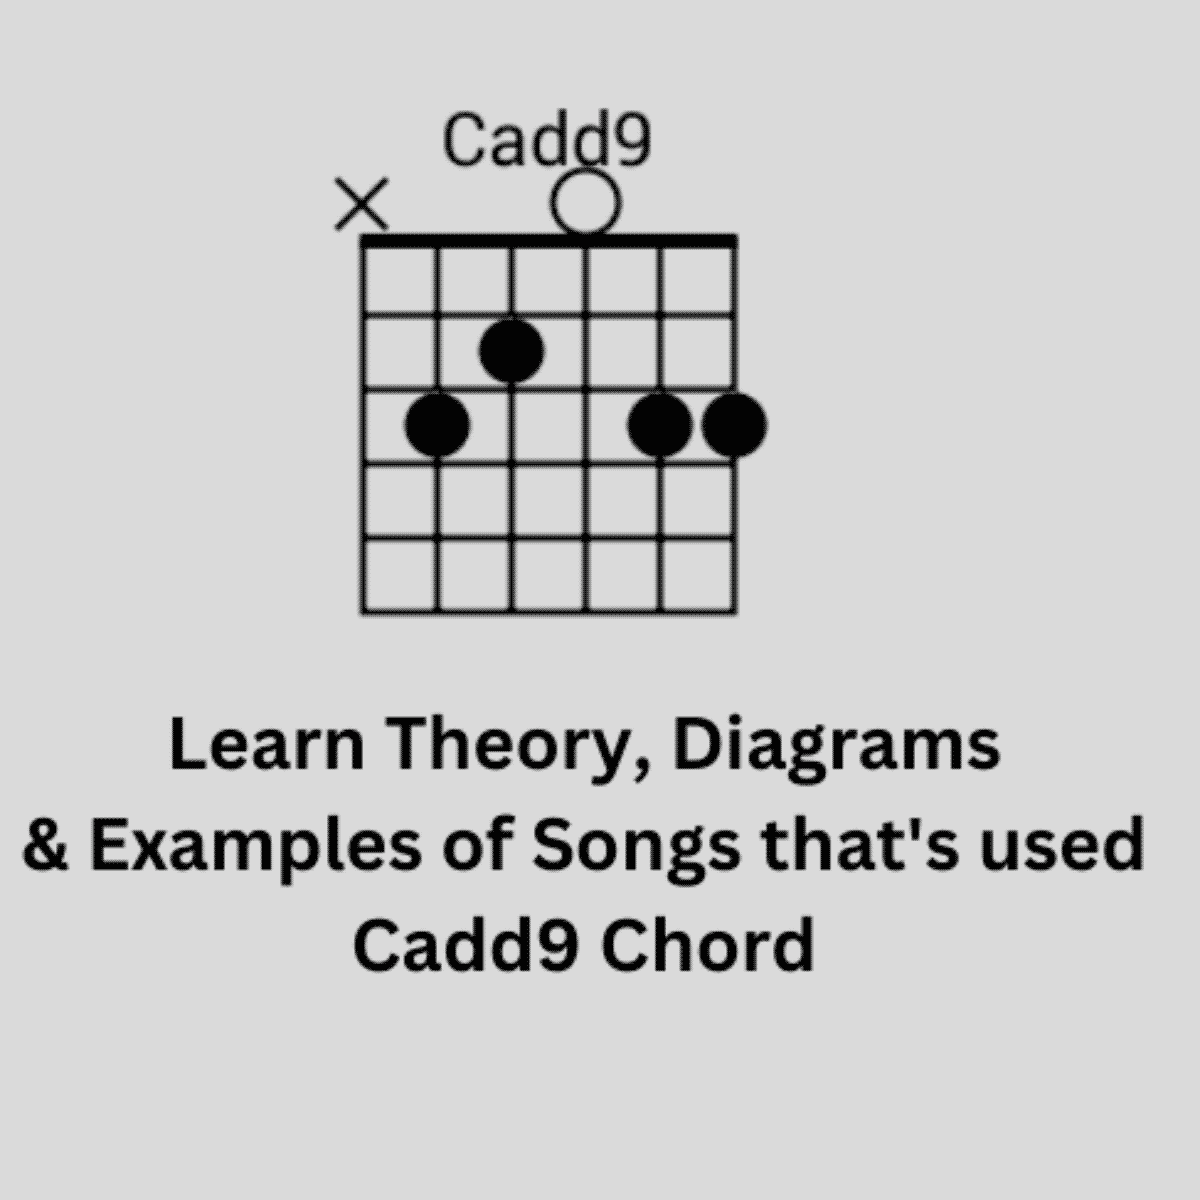 Cadd9 Chord, Diagram & Theory